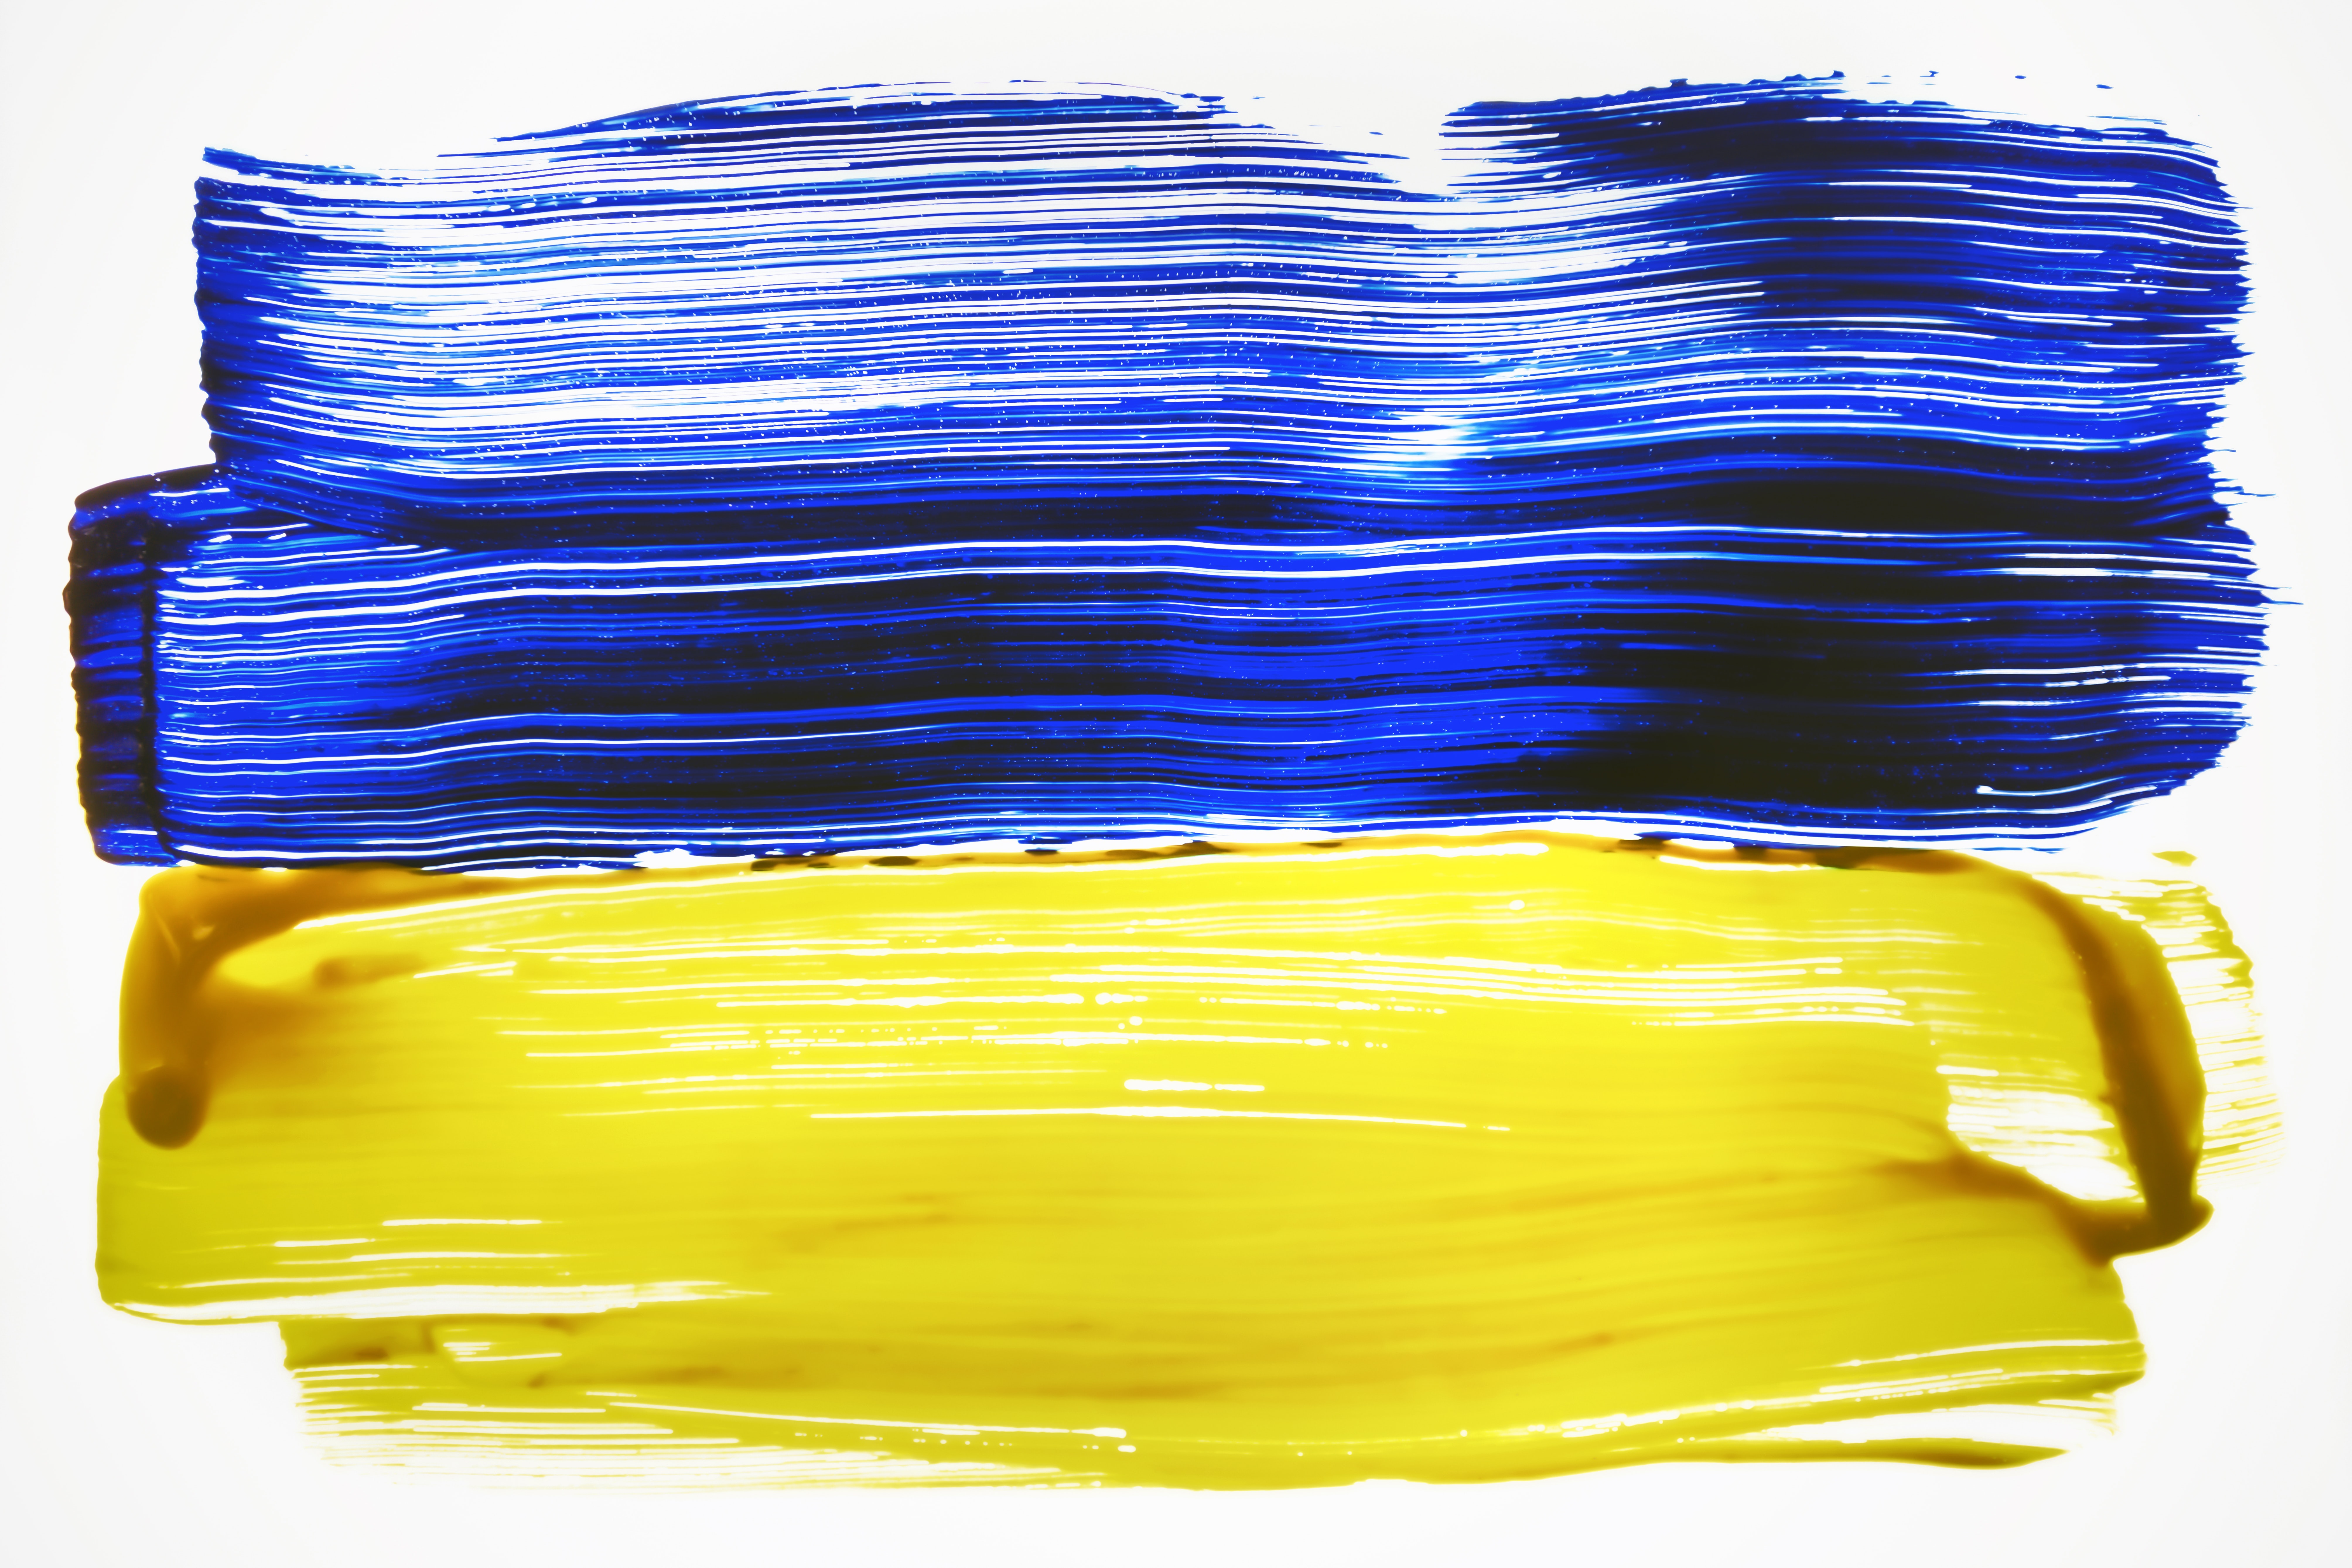 Die Flagge der Ukraine mit Pinsel gemalt: oben blauer unten gelber Streifen.